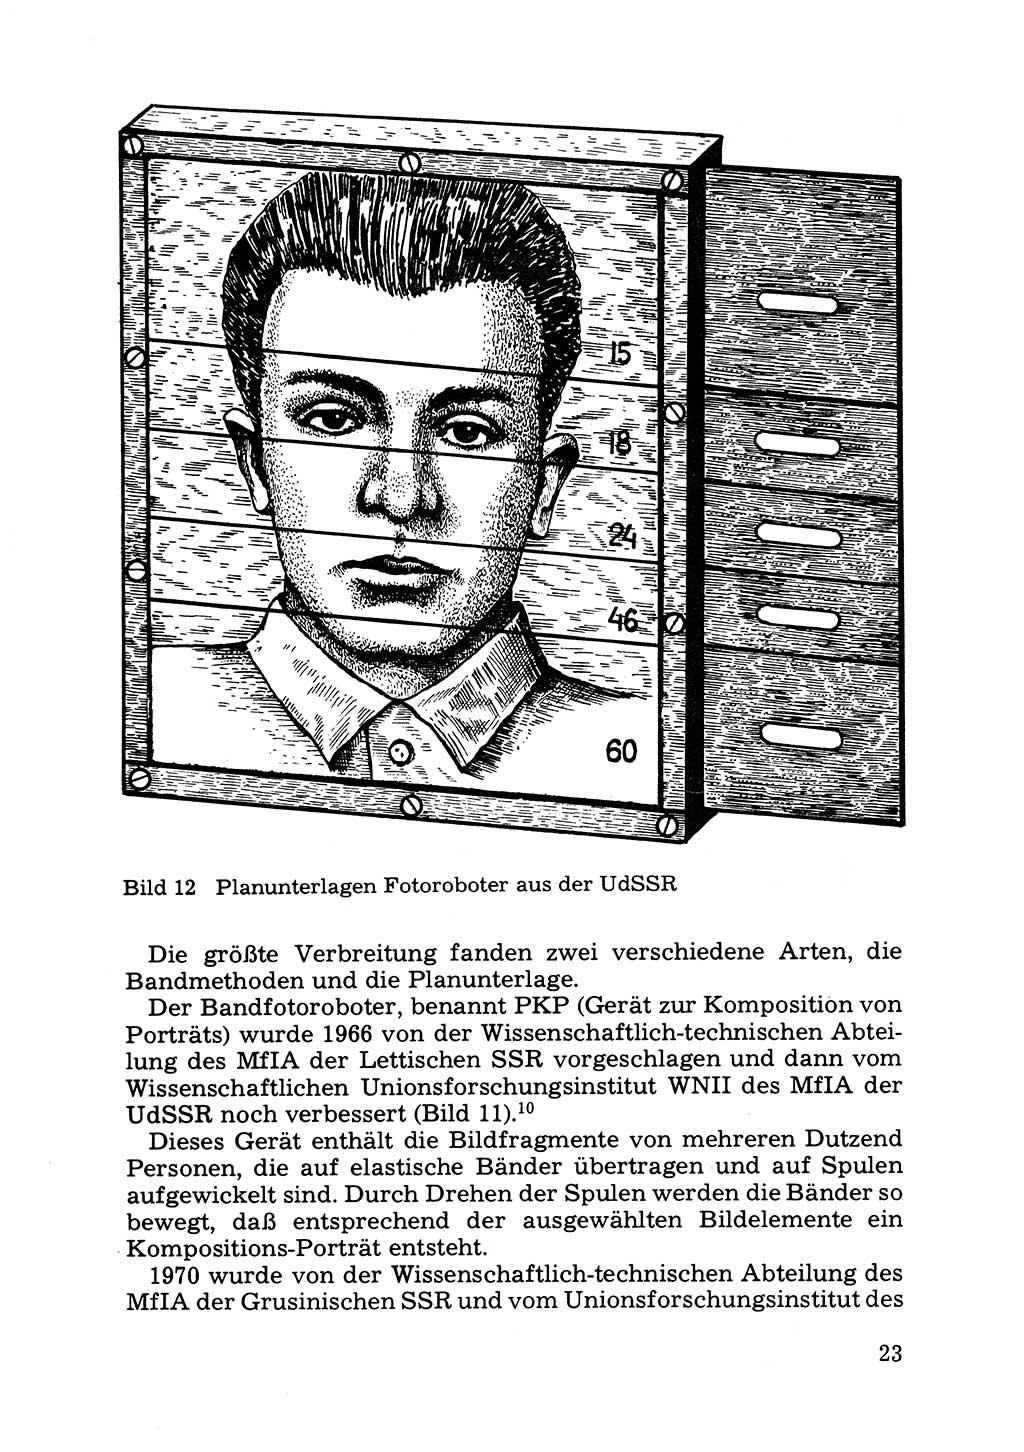 Das subjektive Porträt [Deutsche Demokratische Republik (DDR)] 1981, Seite 23 (Subj. Port. DDR 1981, S. 23)